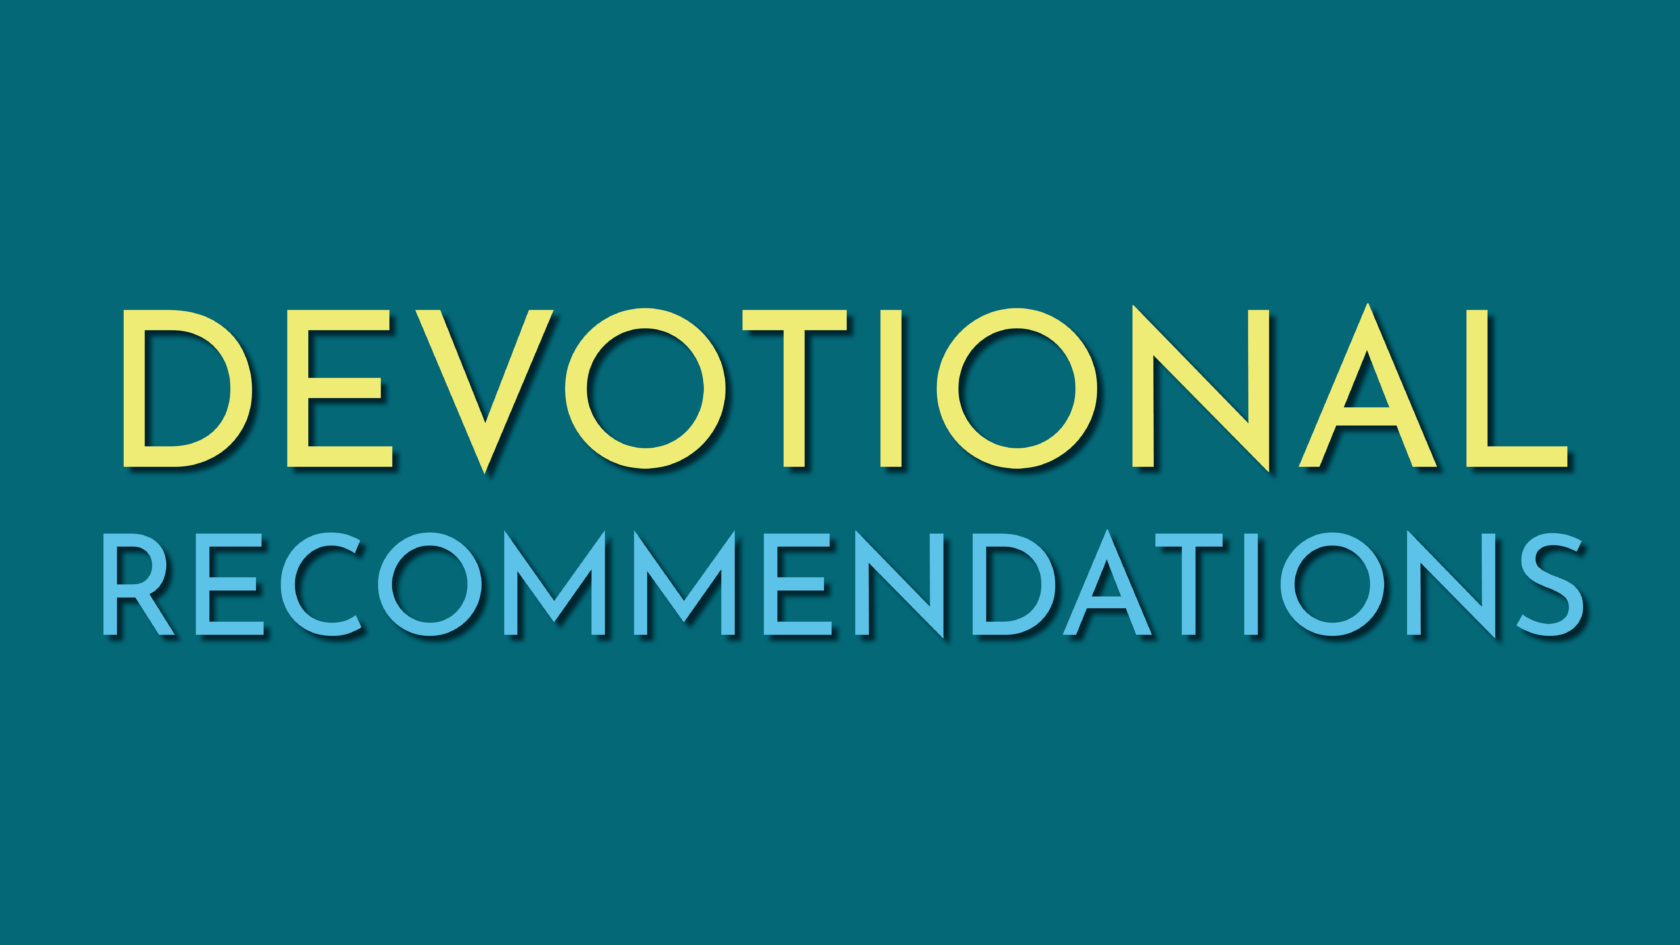 Devotional Recommendations